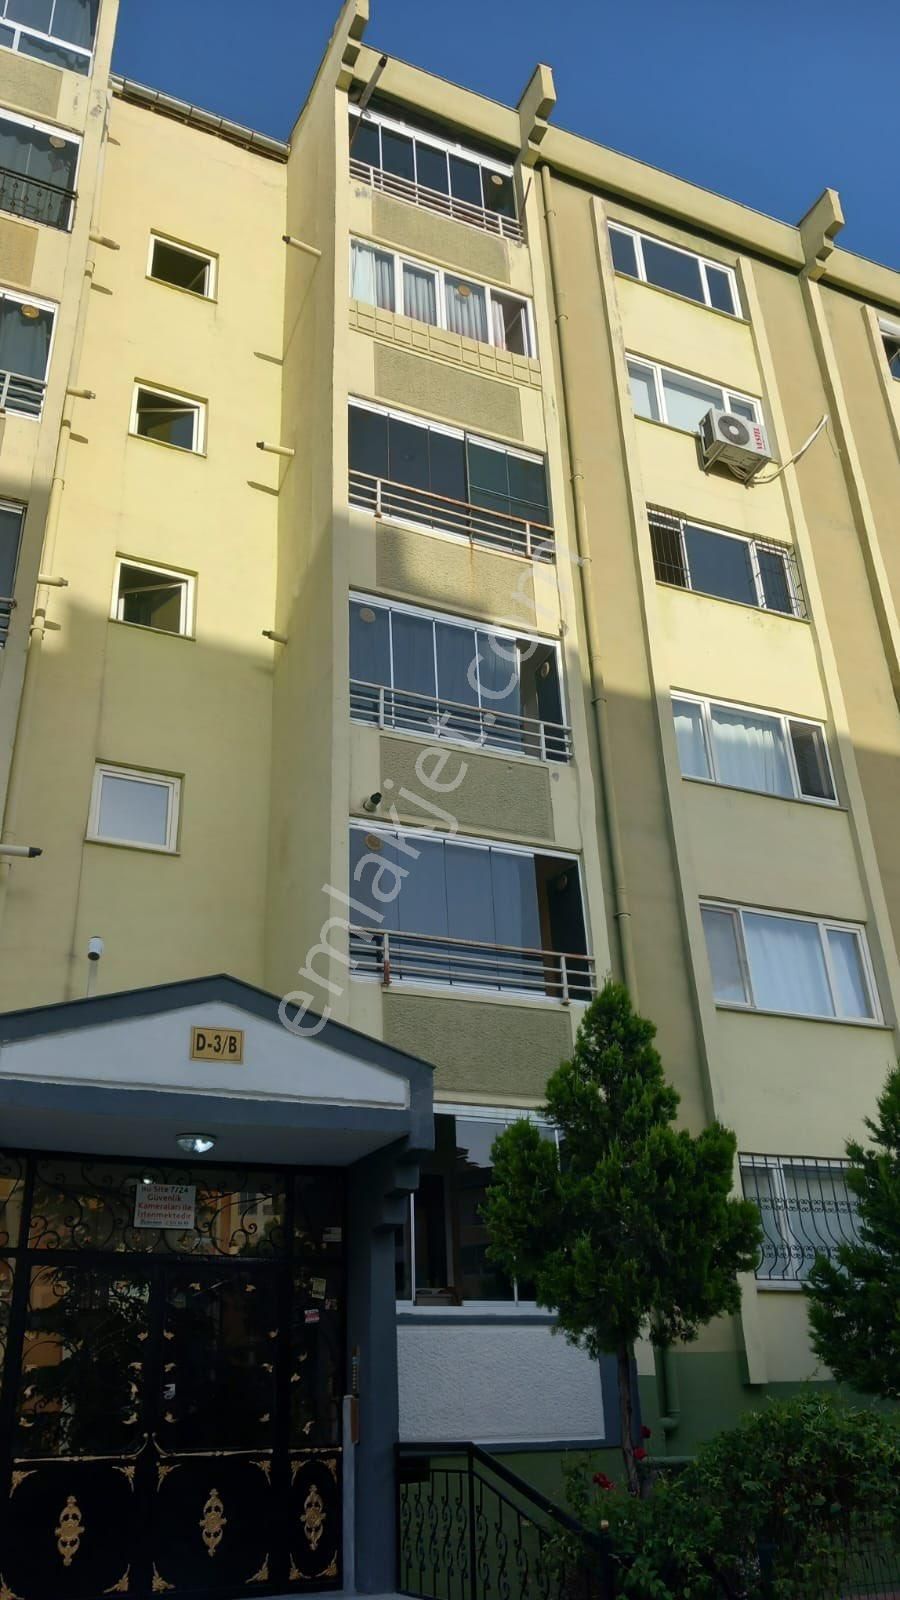 Yeşilyurt Yavuz Selim Kiralık Daire Dairemiz yavuz Selim TOKİ’de olup beş katlı binanın beşinci kat katı 3 + 1 full yapılı